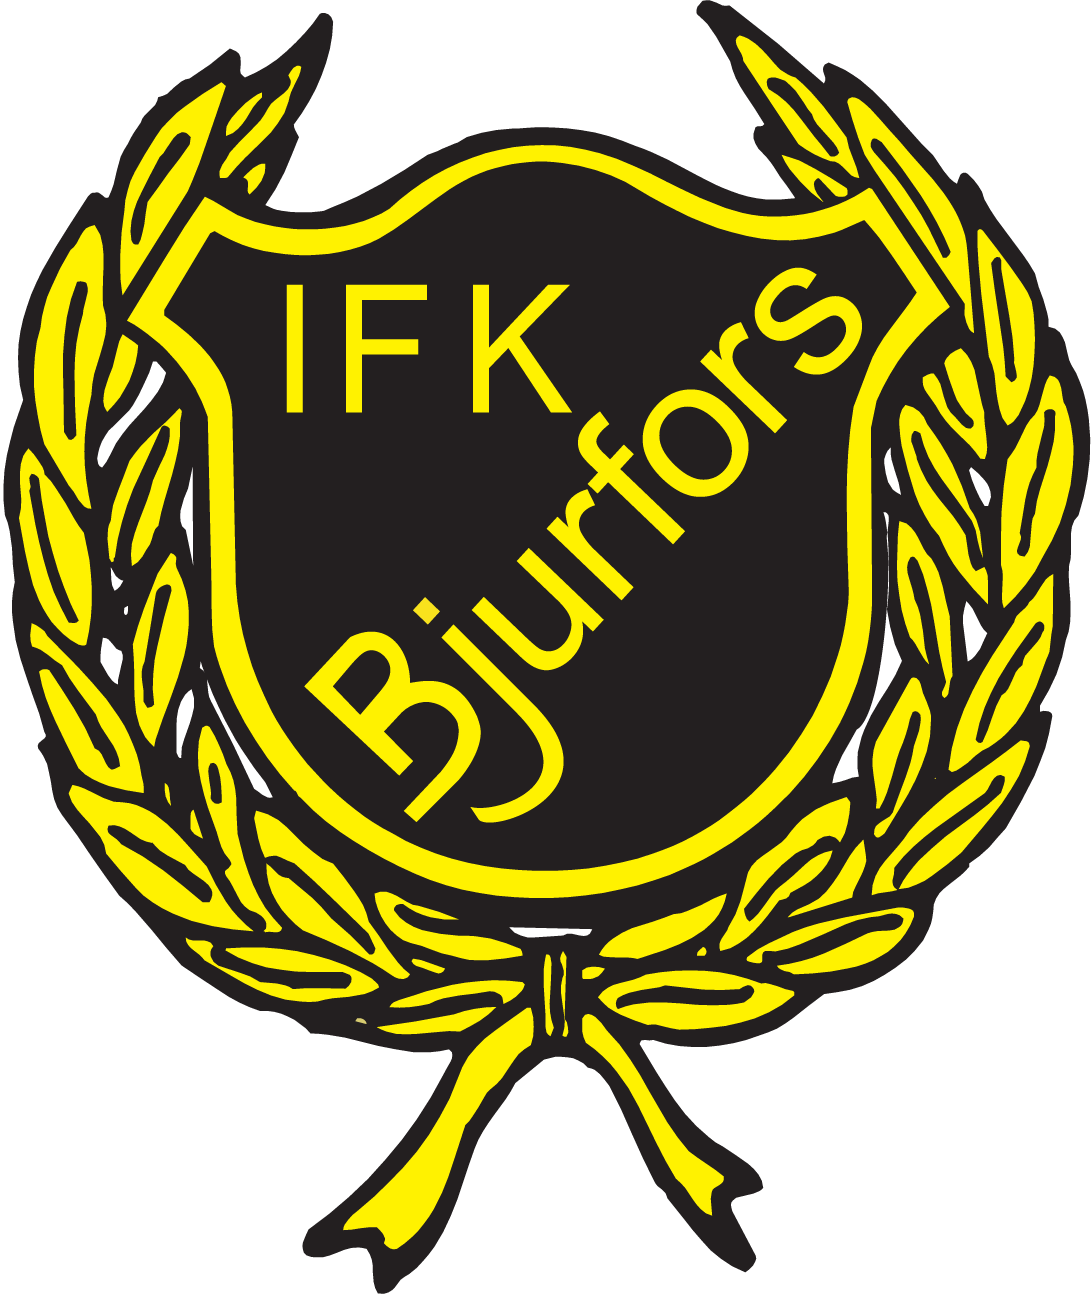 IFK Bjurfors